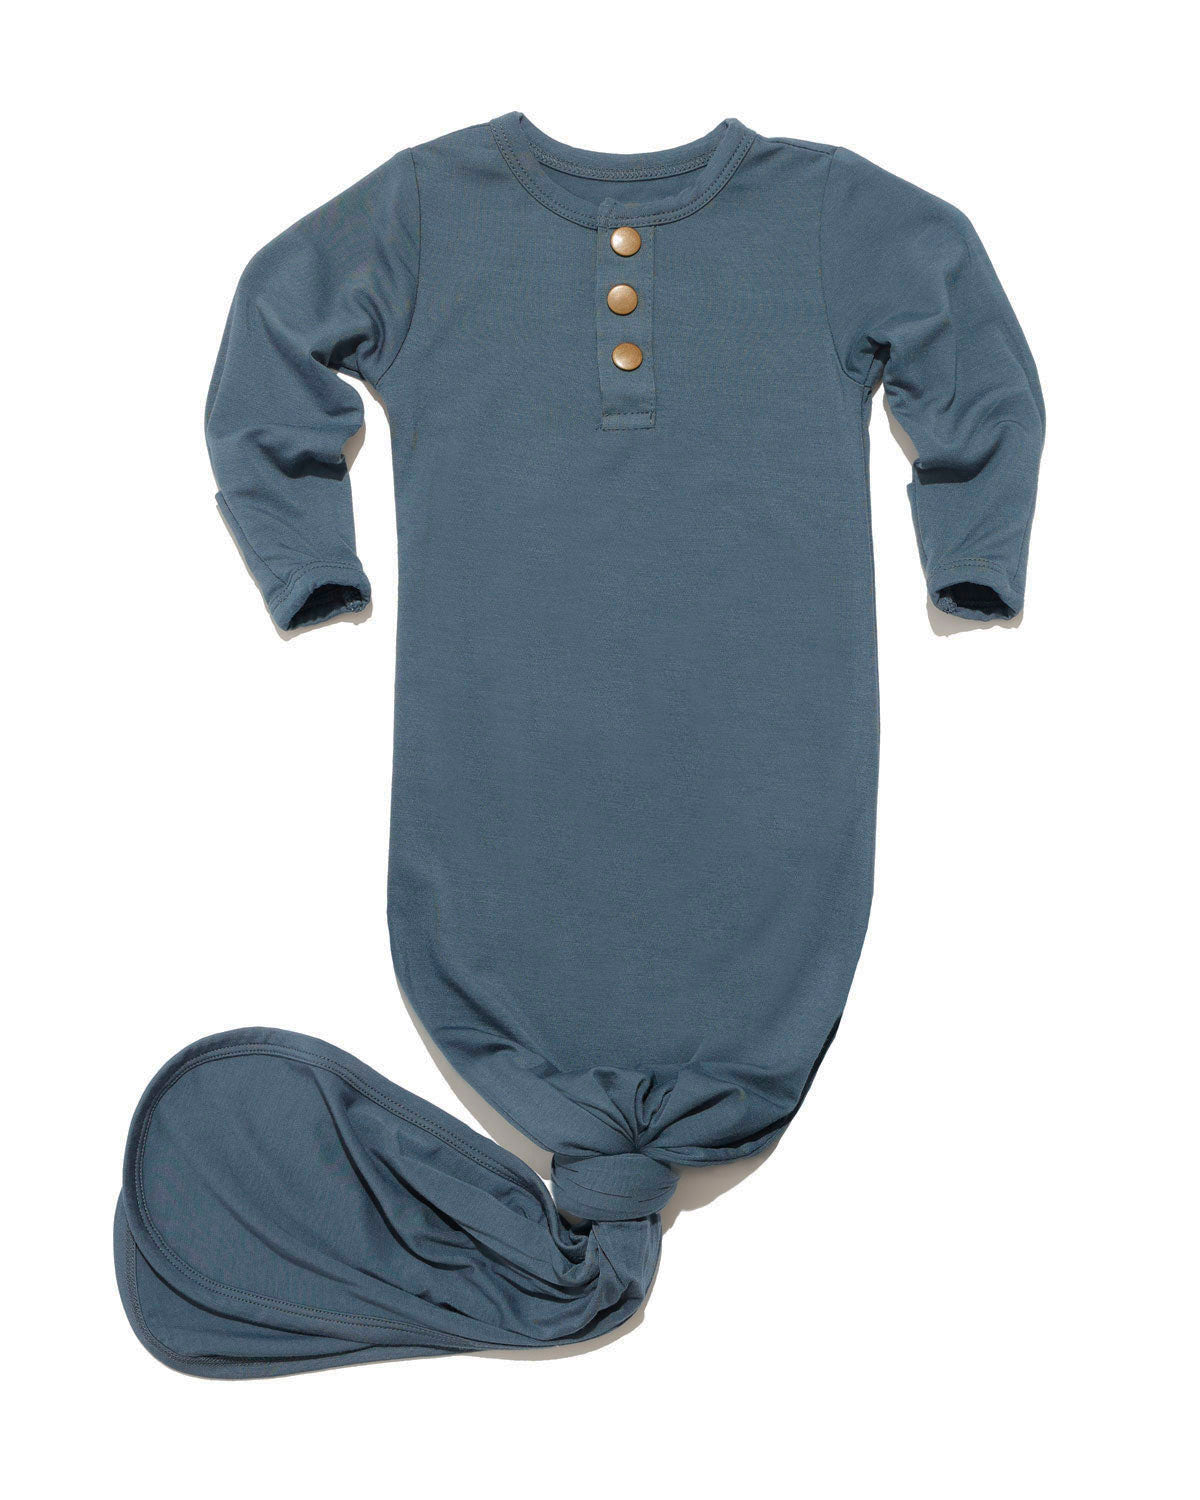 Navy newborn essential bundle (knotted Sleeper)